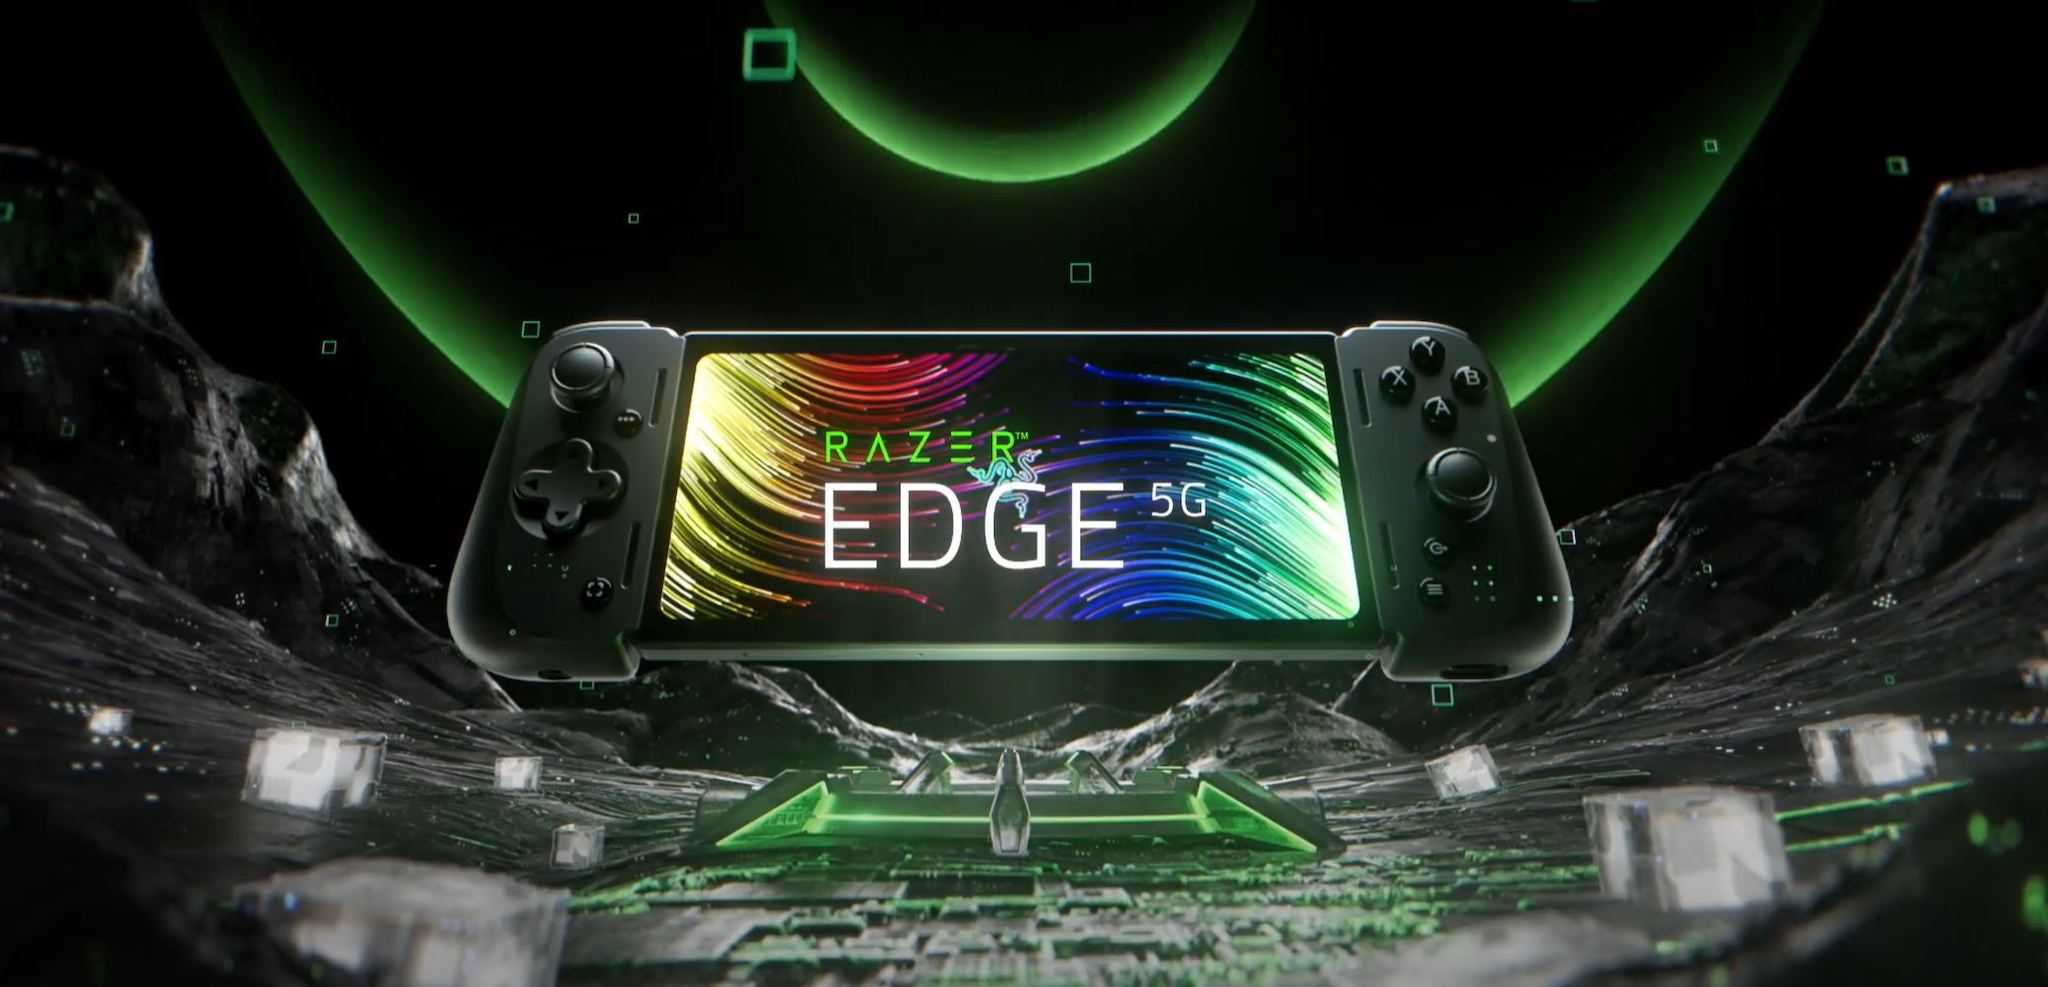 Razer Edge ra mắt chính thức: Tùy chọn 5G, giá từ 399 USD